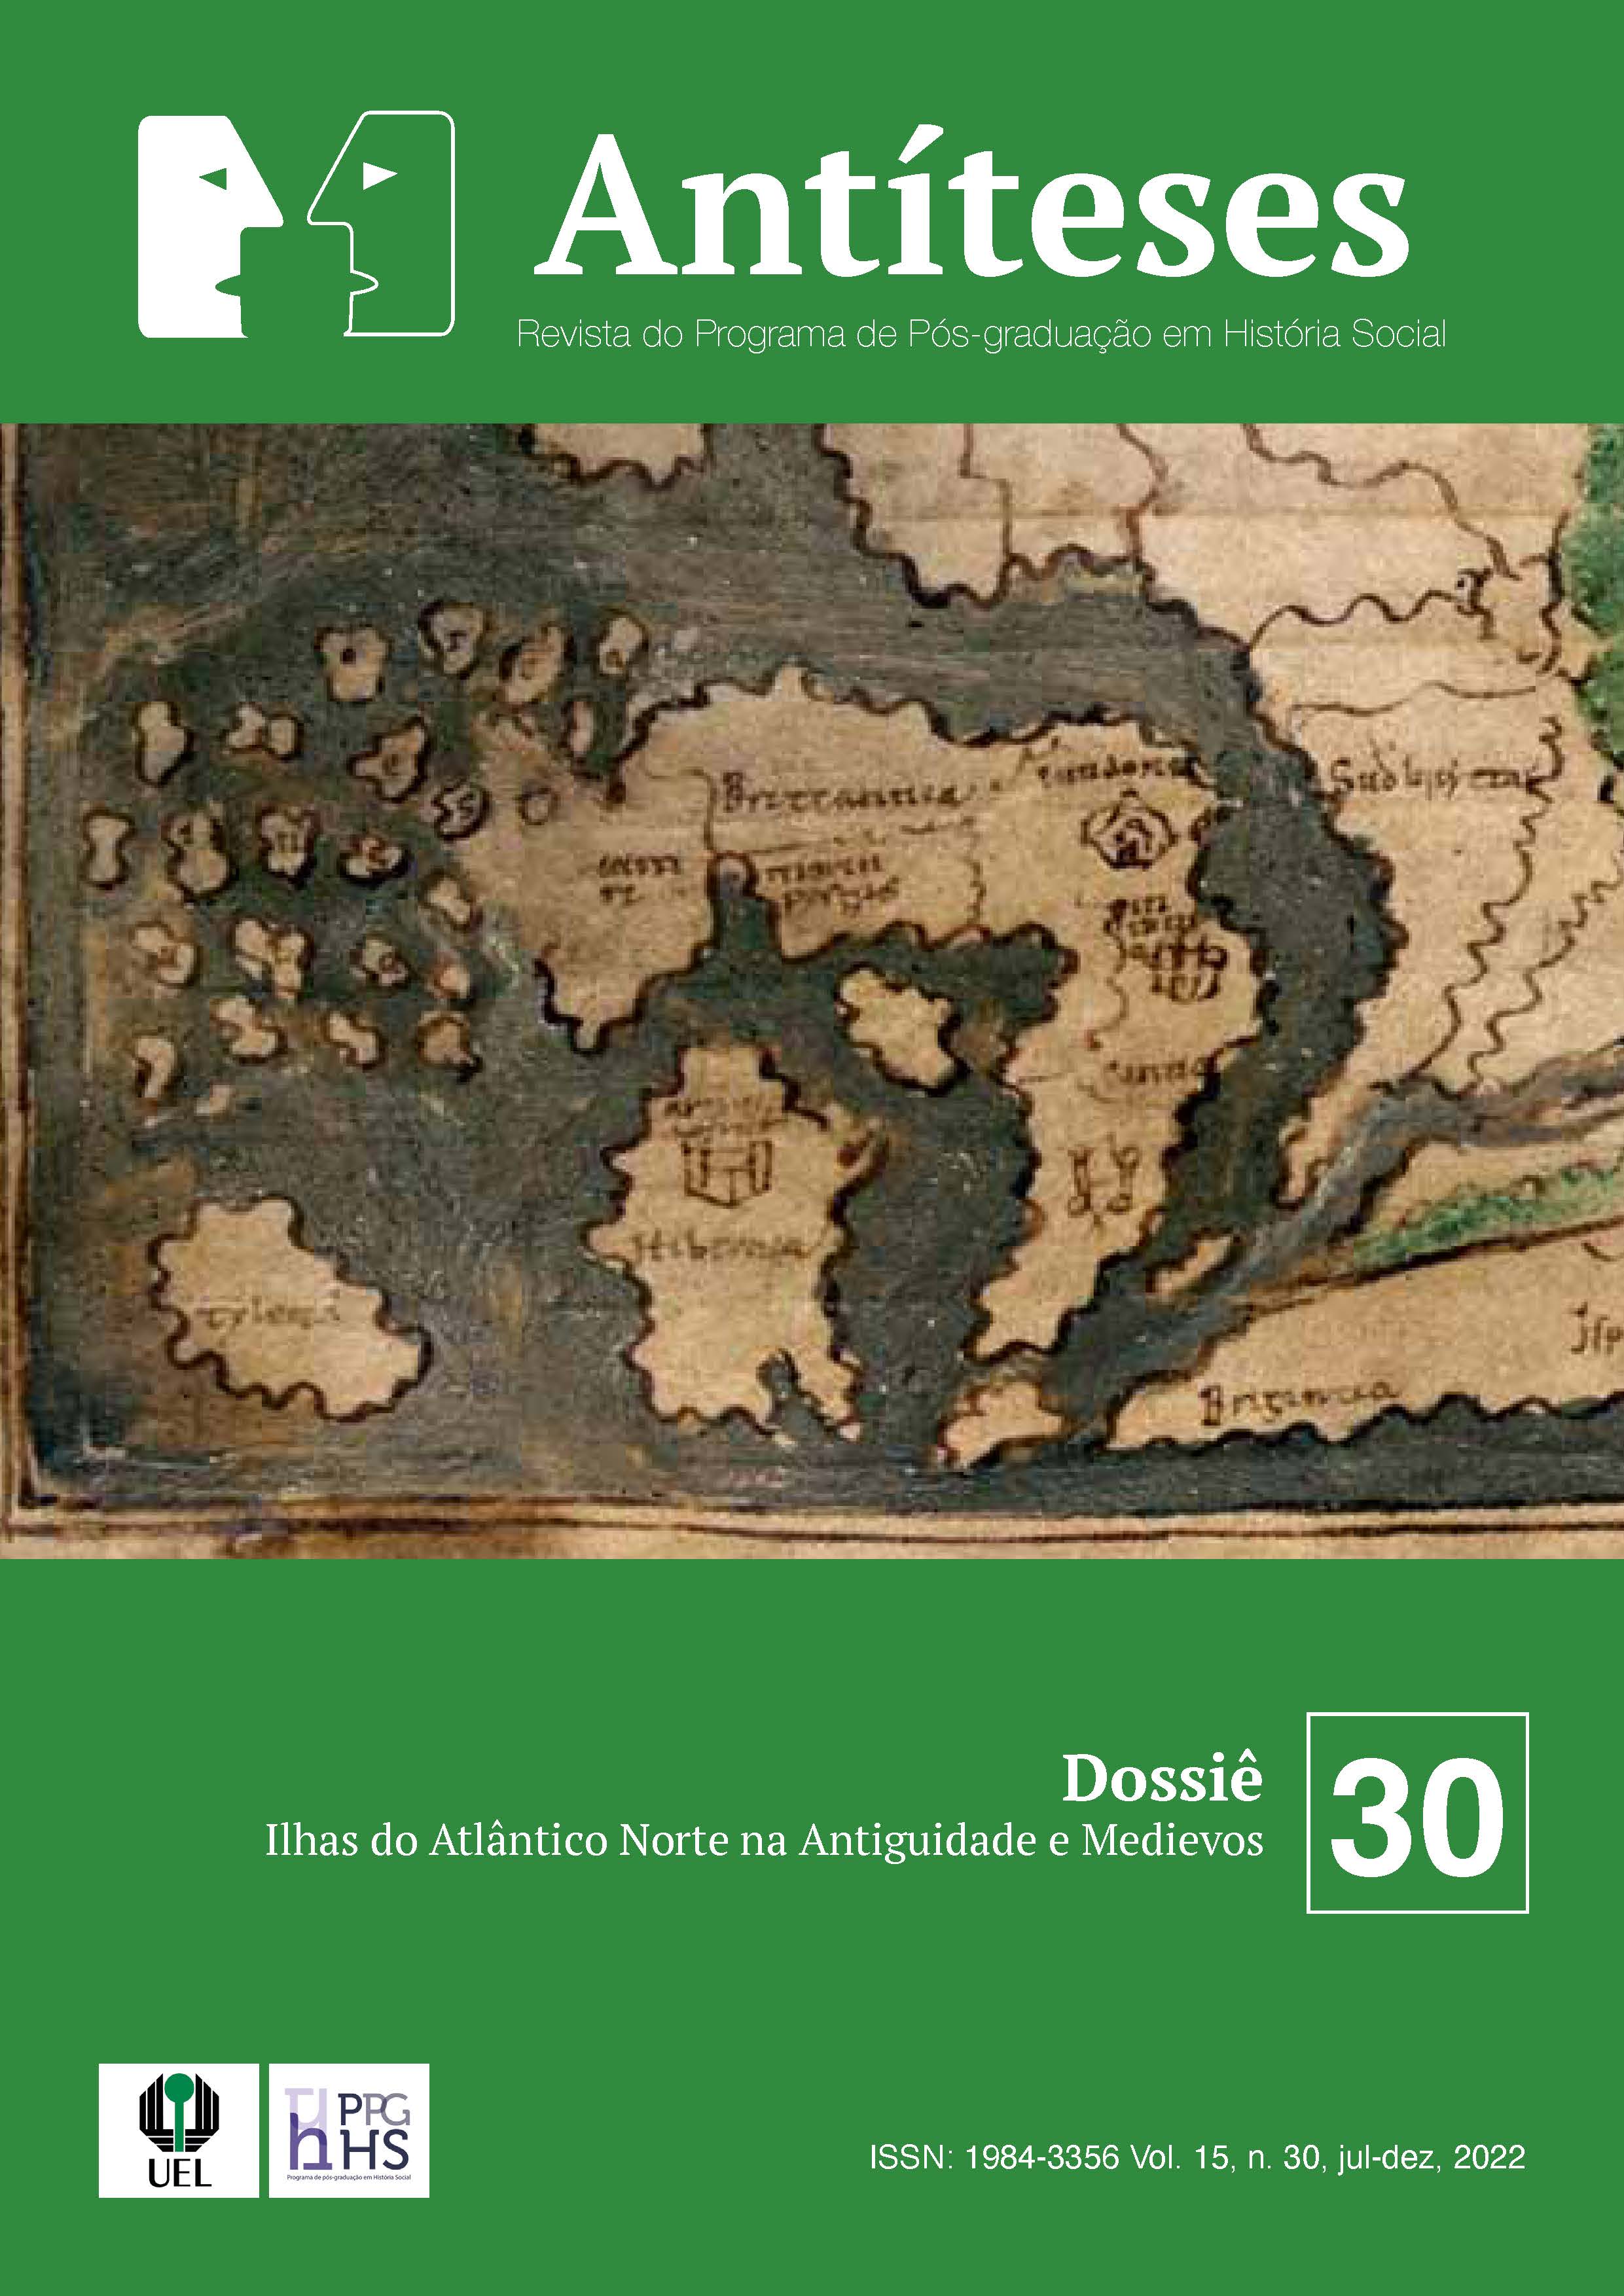 					Visualizar v. 15 n. 30 (2022): Dossiê - Ilhas do Atlântico Norte na Antiguidade e Medievos
				